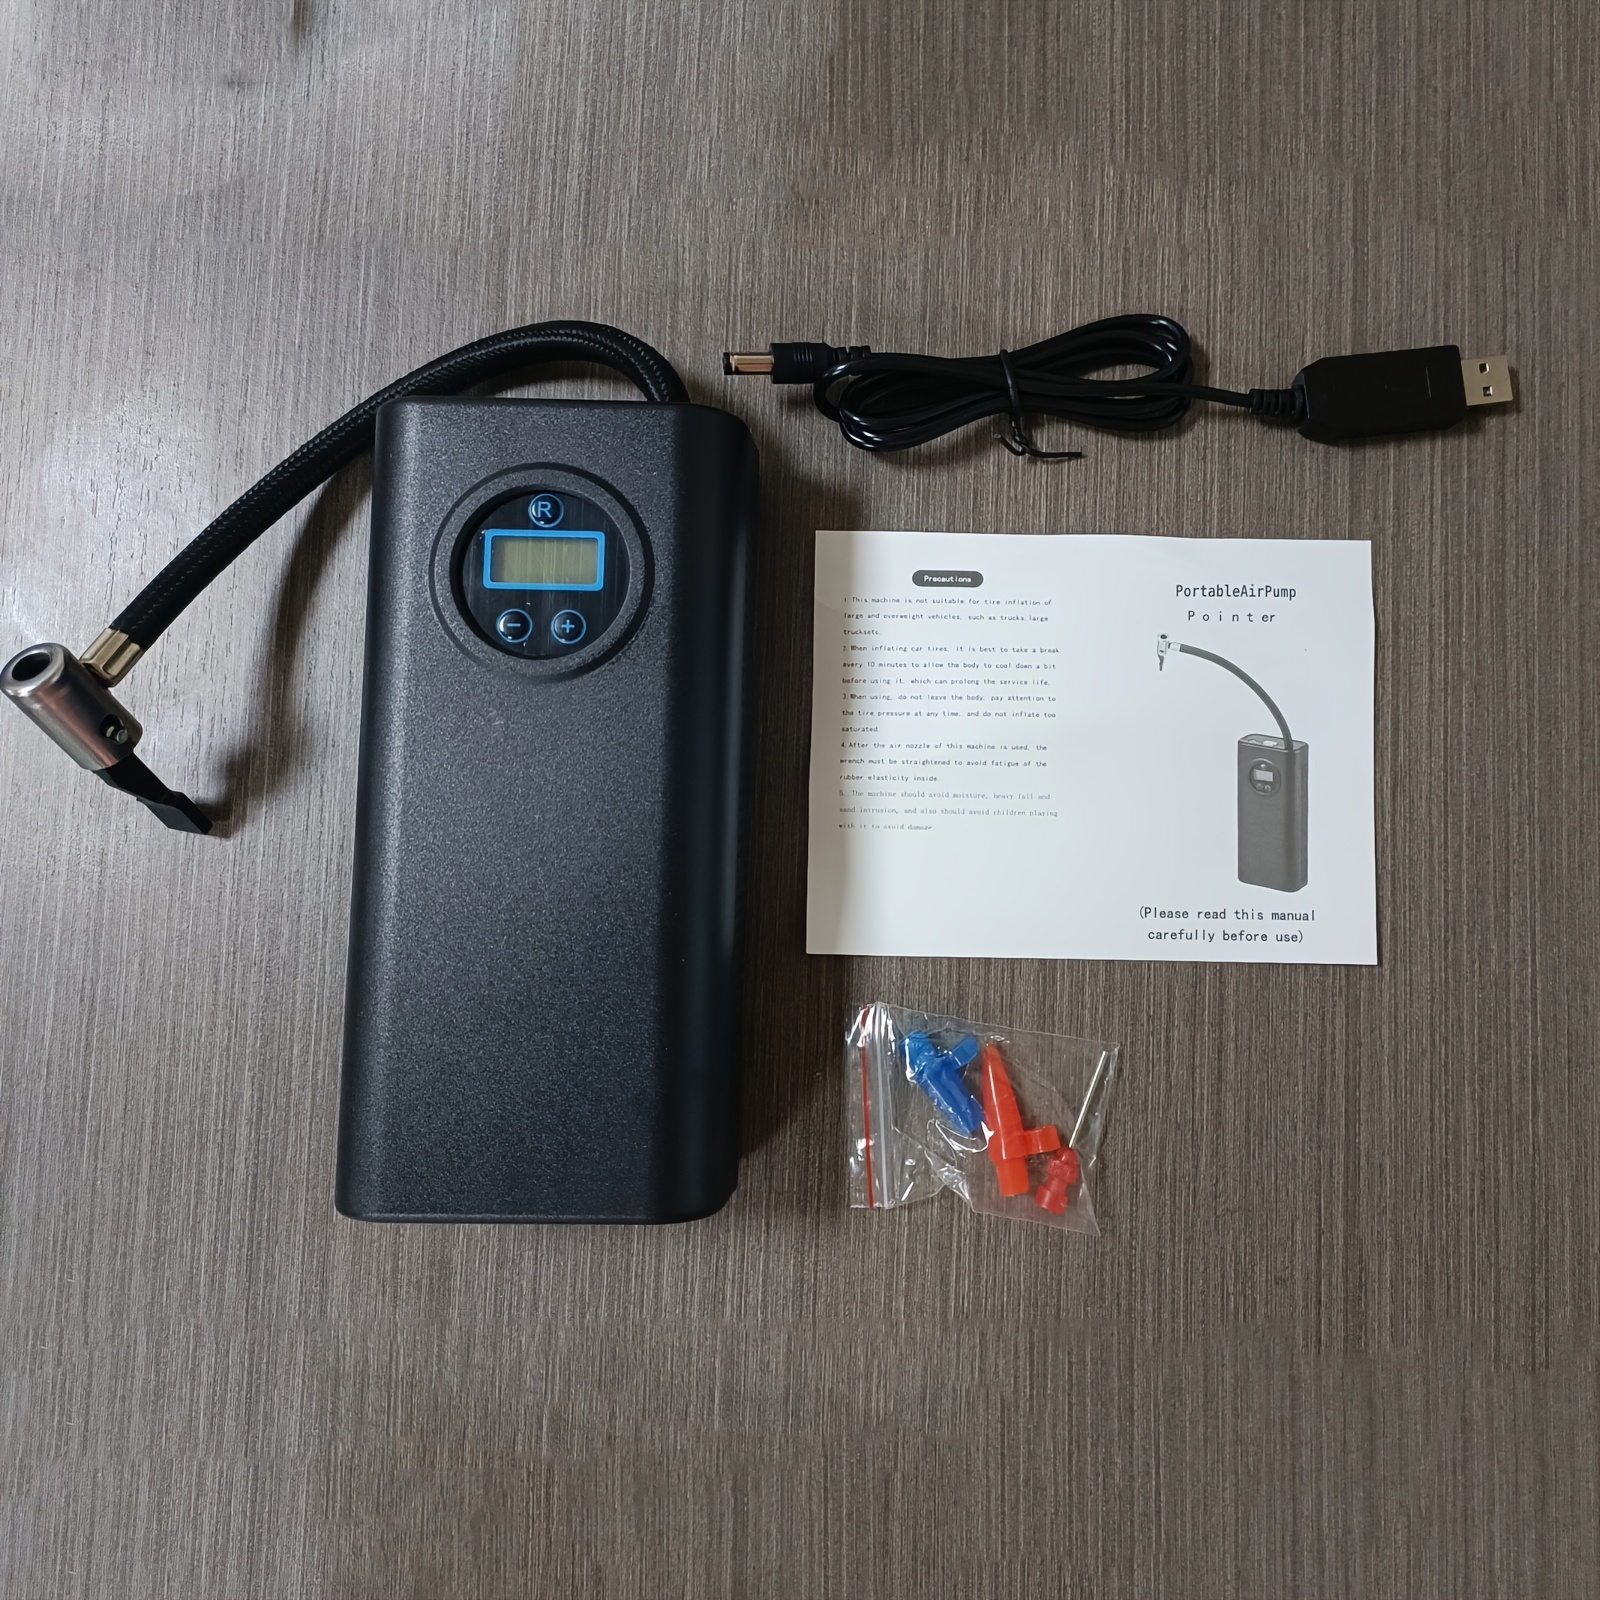 HYUNDAI Gonfleur portable 20V avec batterie et chargeur HPA20V1B2A